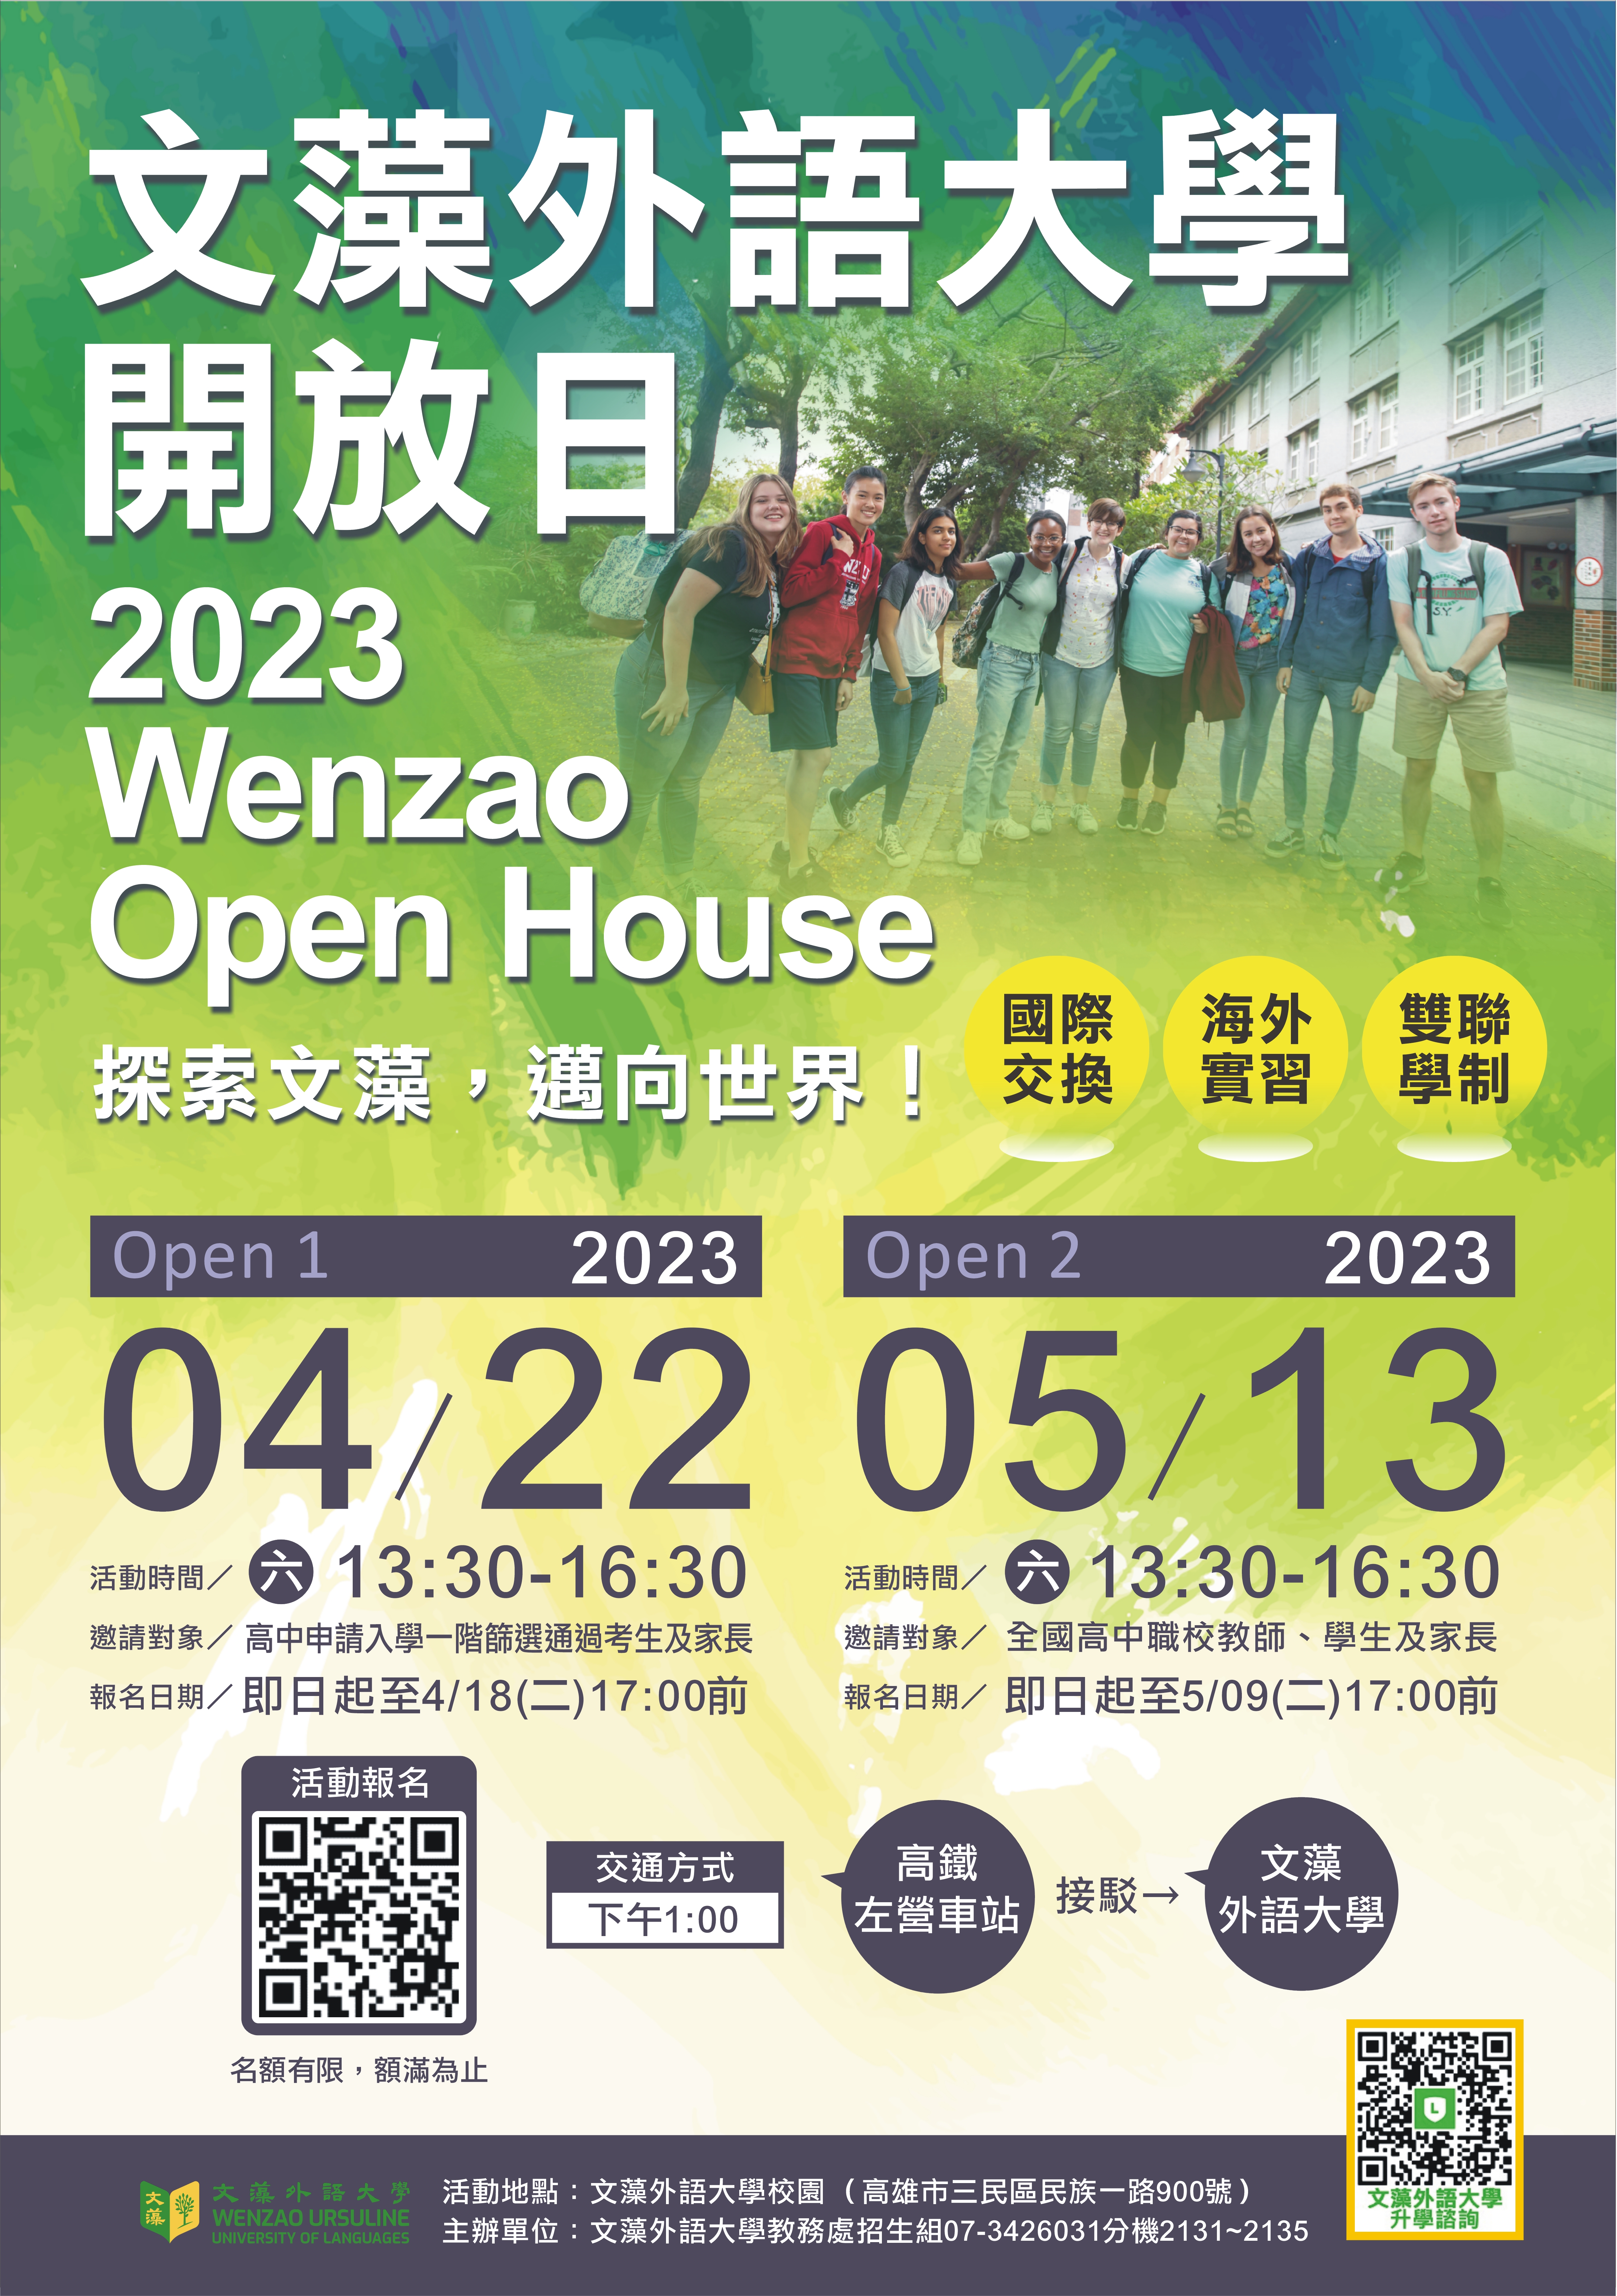 文藻外語大學舉辦「2023Wenzao Open House探索文藻，邁向世界」活動